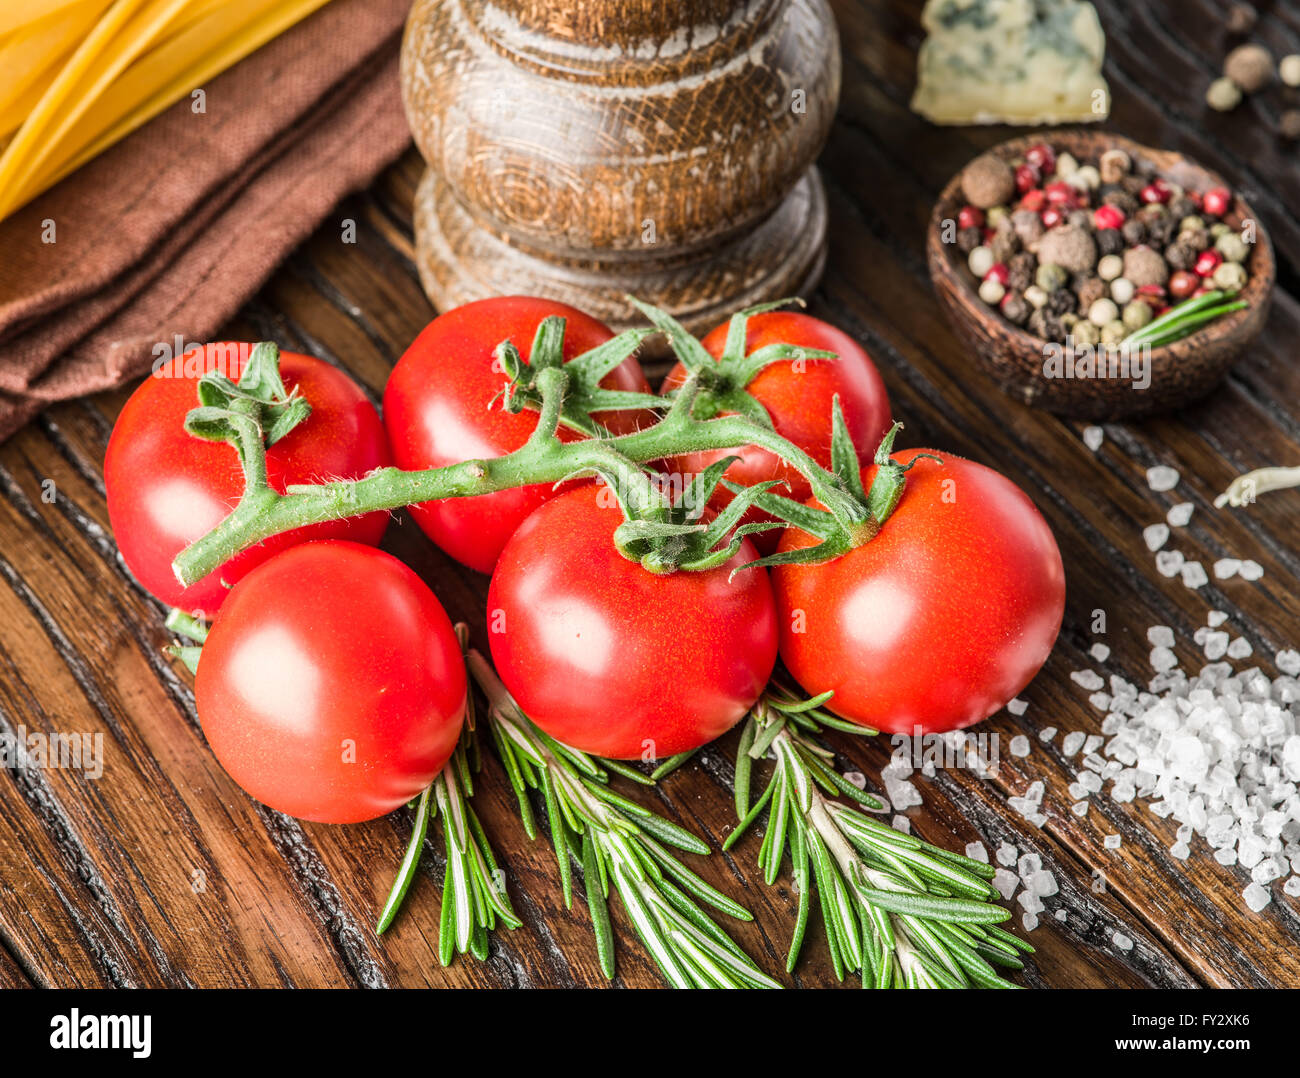 Ingrédients pâtes. Les tomates cerise, les pâtes spaghetti, de romarin et d'épices sur la table en bois. Banque D'Images